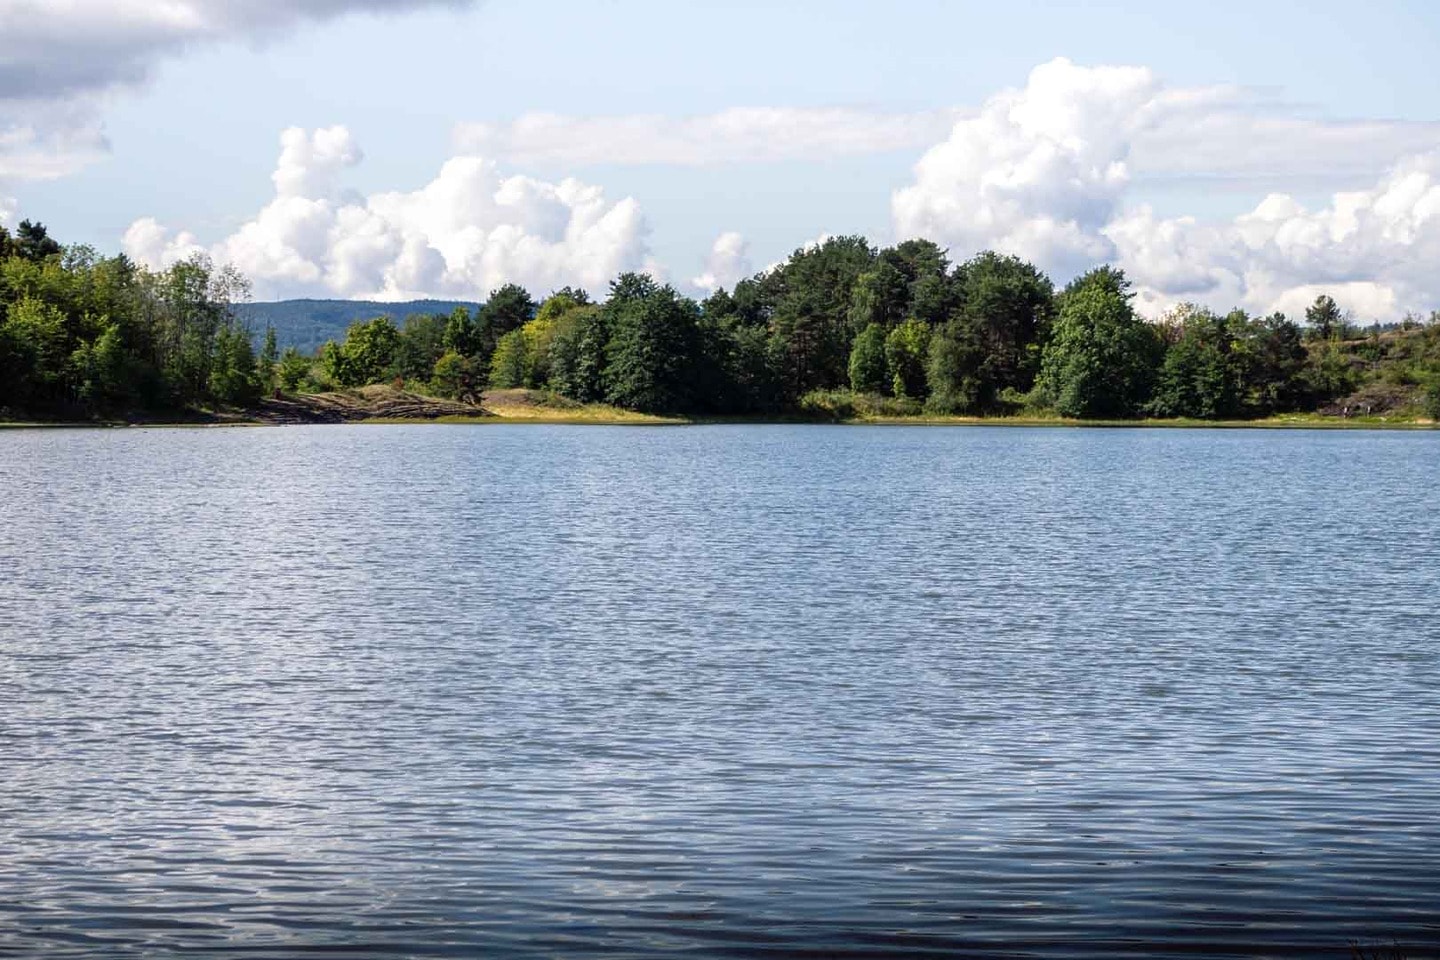 Oslo Fjord swimming spot